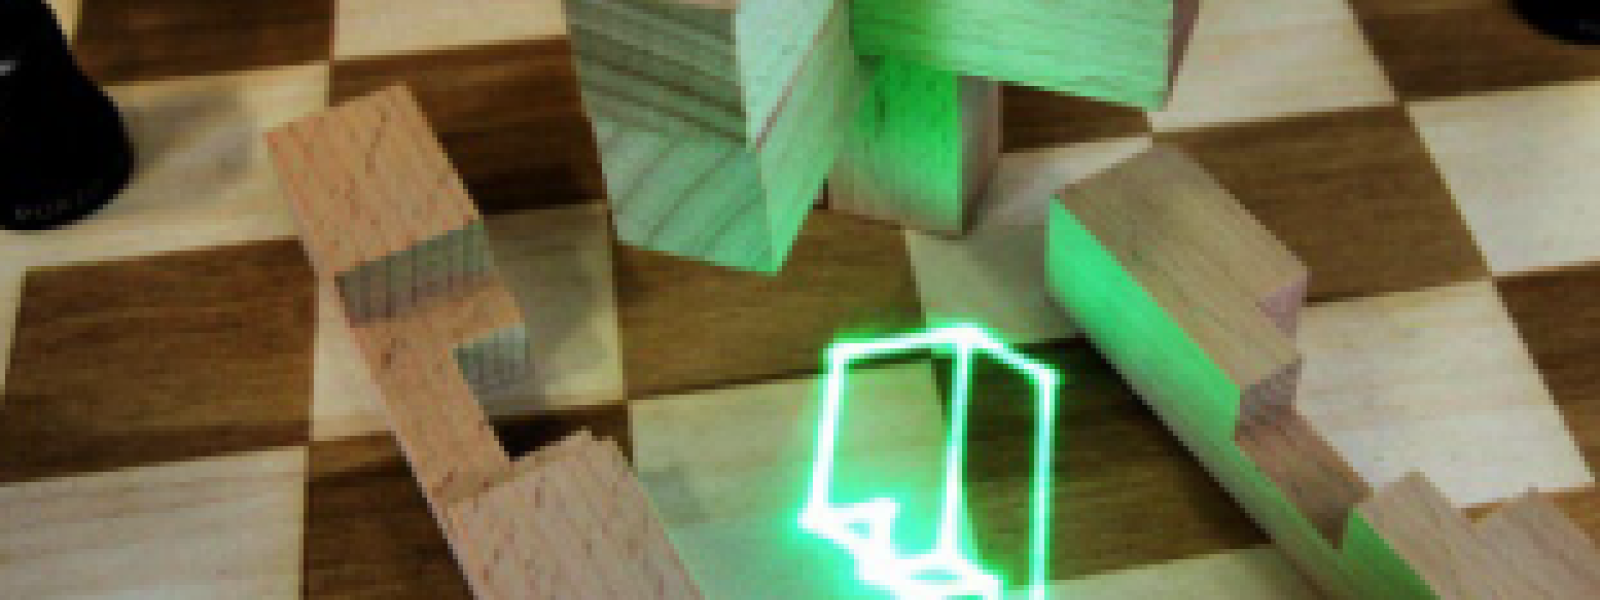 Ineinandergesteckte Holzformteile und ein überlagert dargestelltes laserprojiziertes grün leuchtendes Formteil